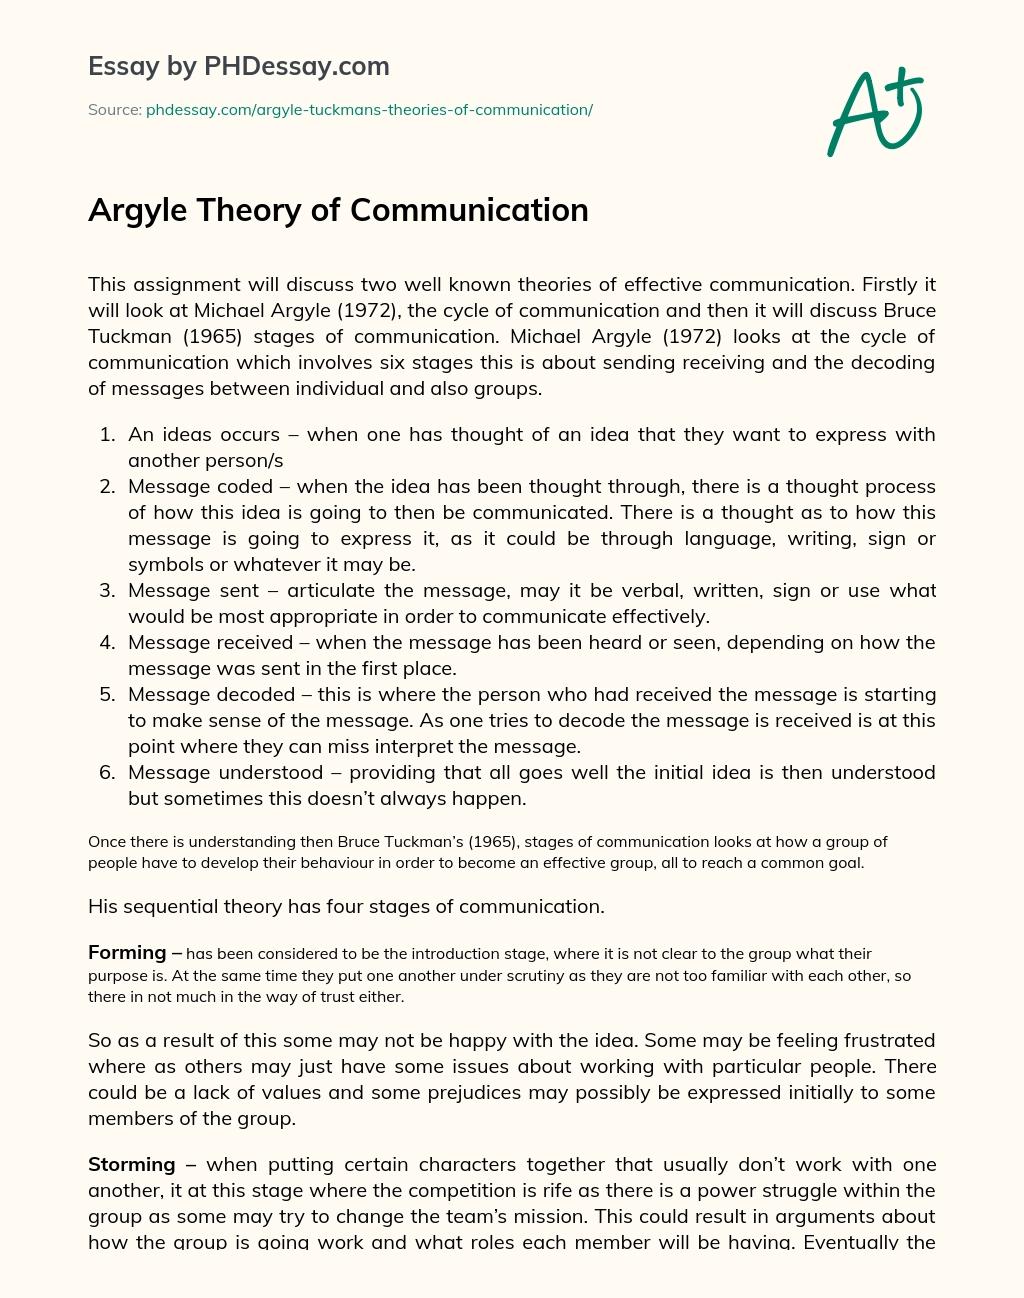 Argyle Theory of Communication essay